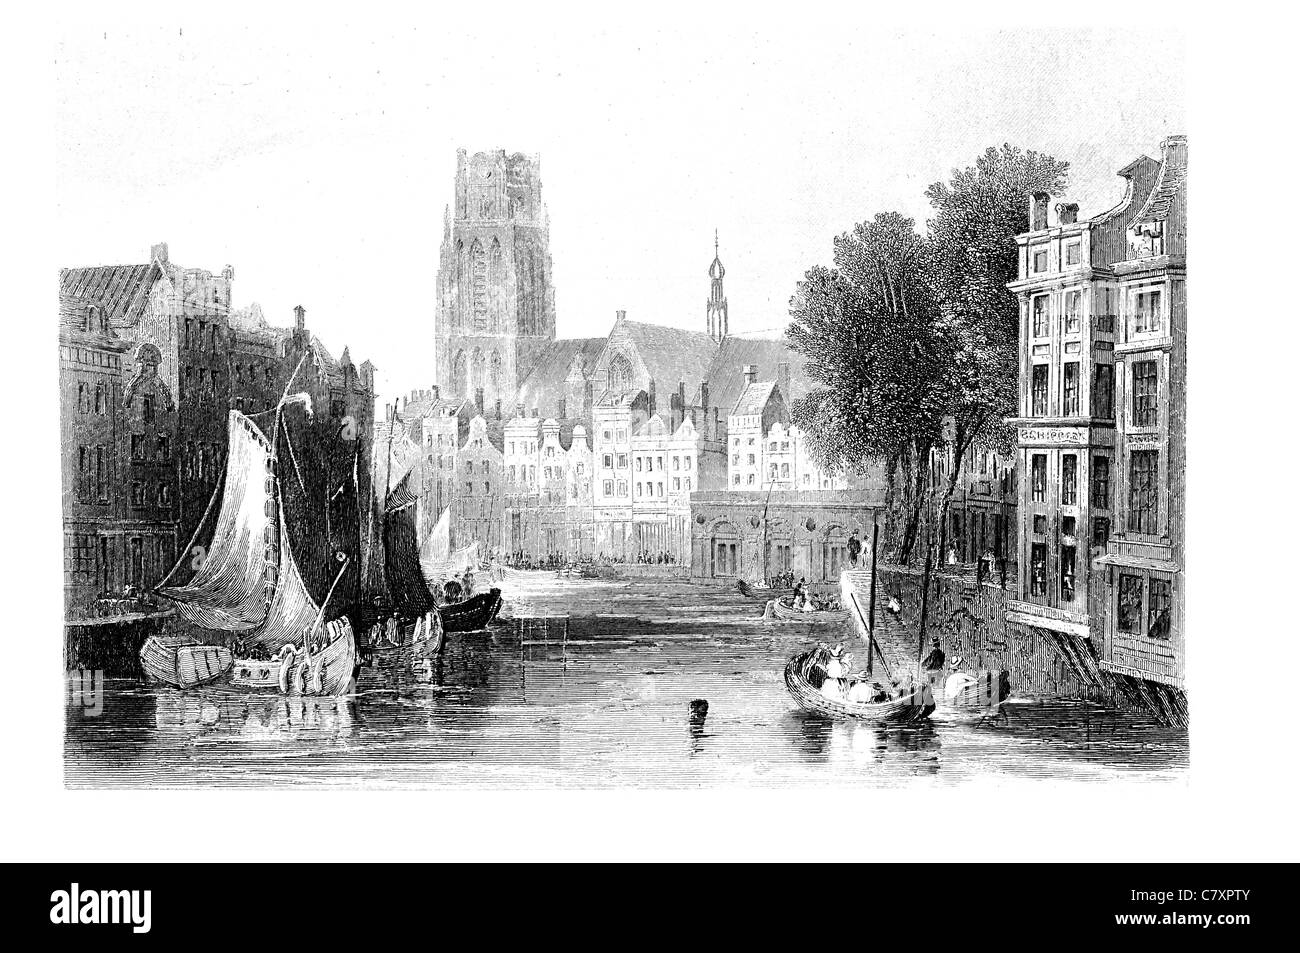 Rotterdam via medievale scena di liquame poveri contadini città patrimonio della torre guglia in legno commercio fluviale barca nave merchant canal Foto Stock